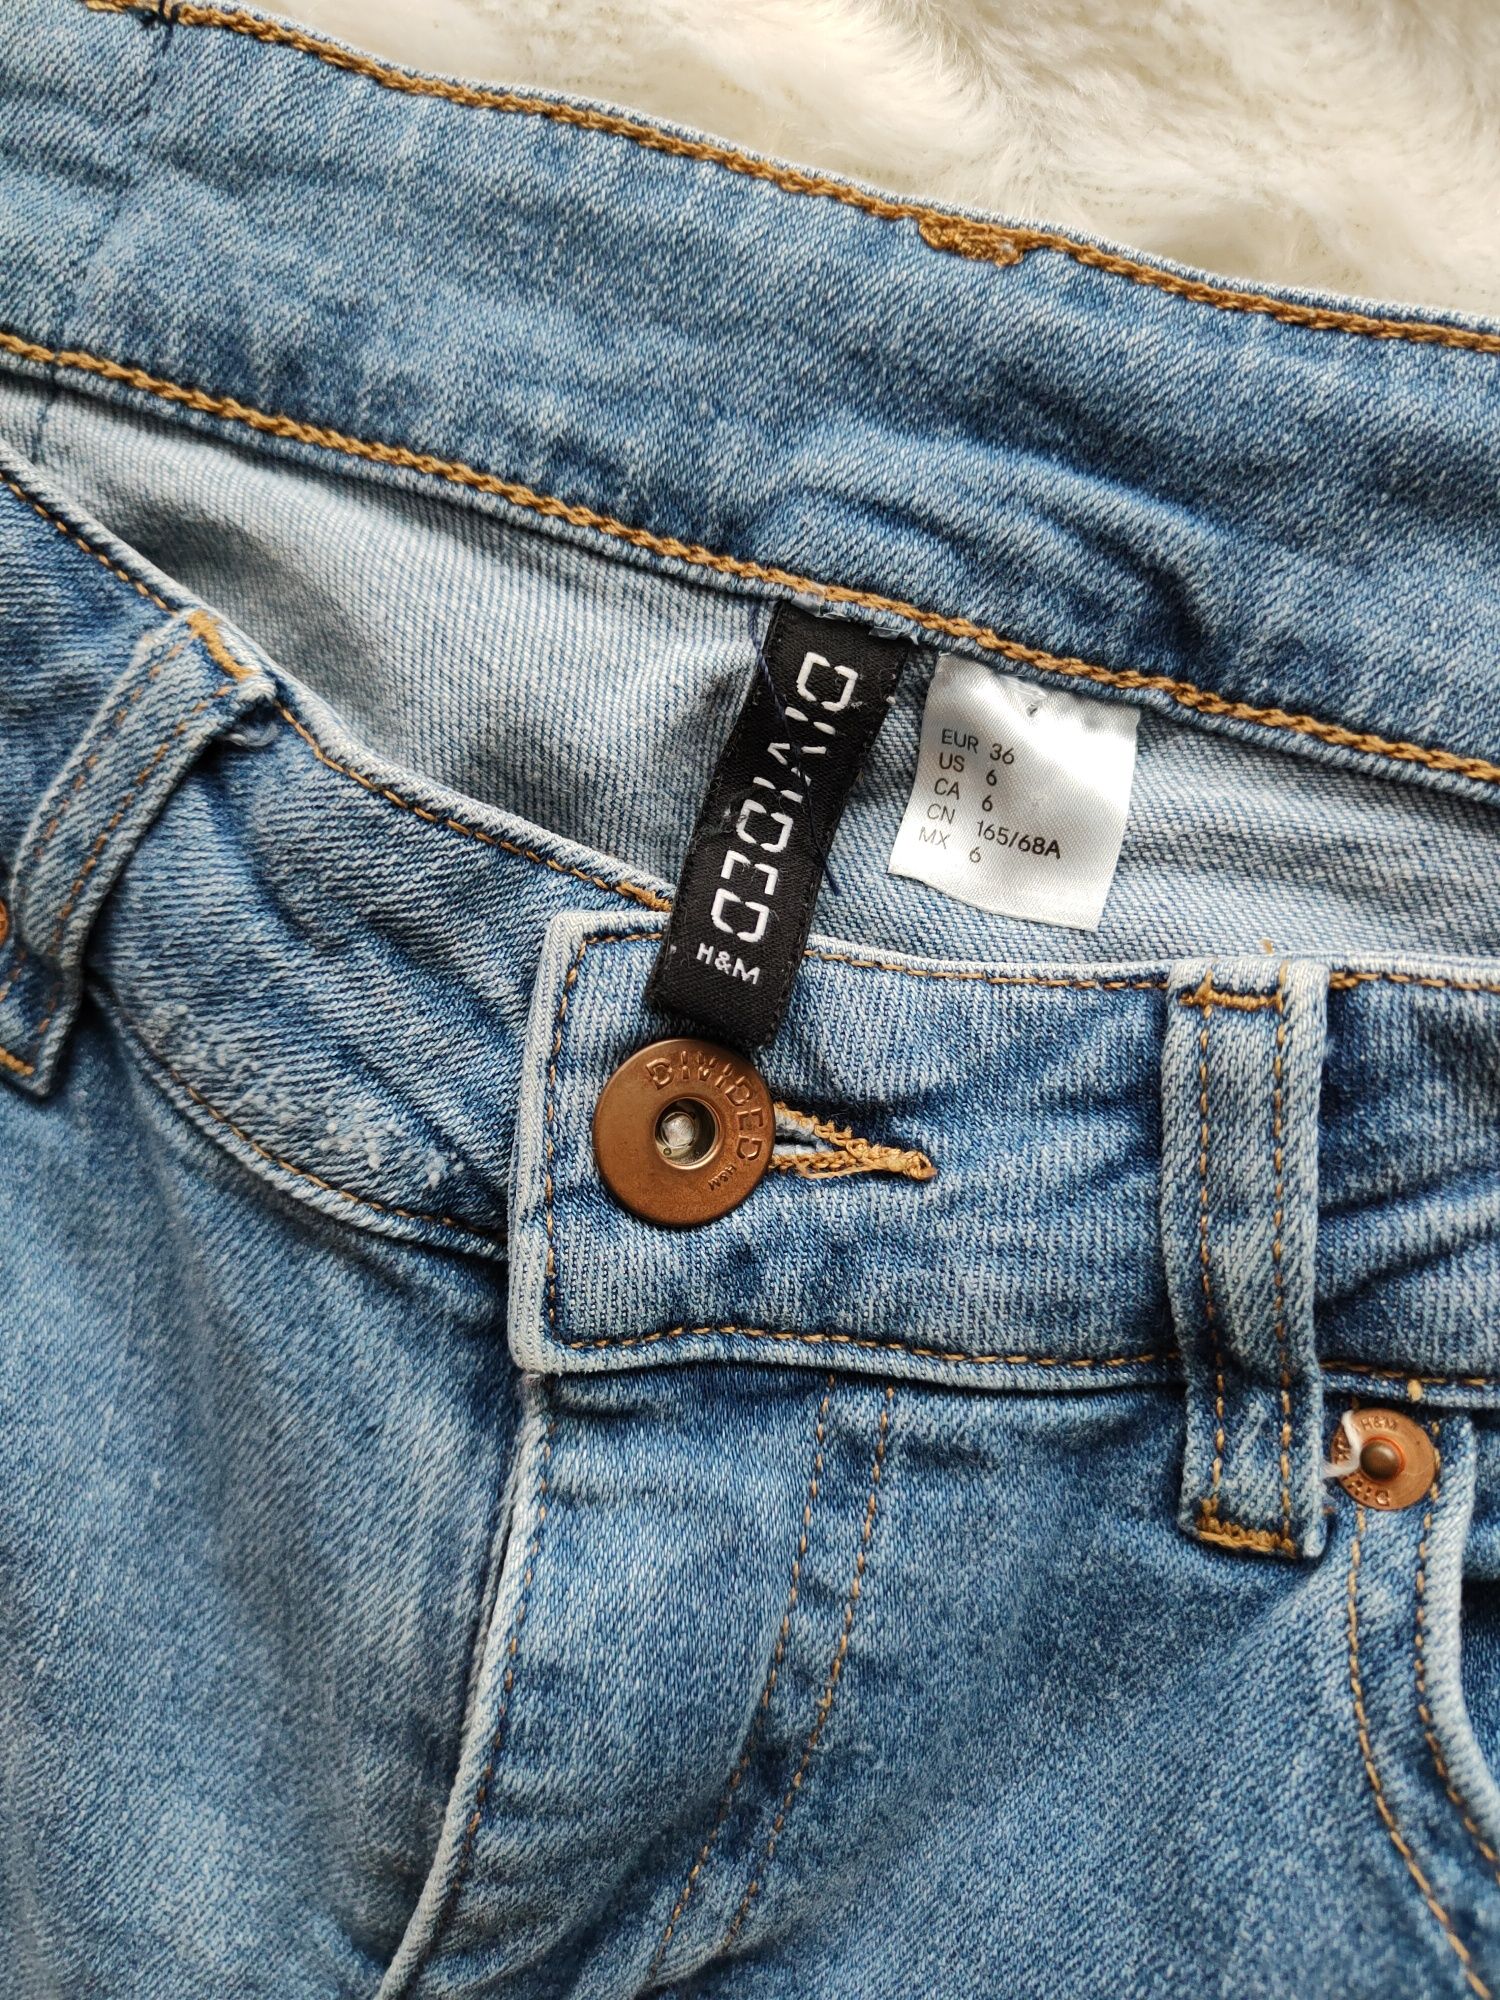 Niebieskie jeansy spodnie damskie z dziurami i rozdarciami H&M 36